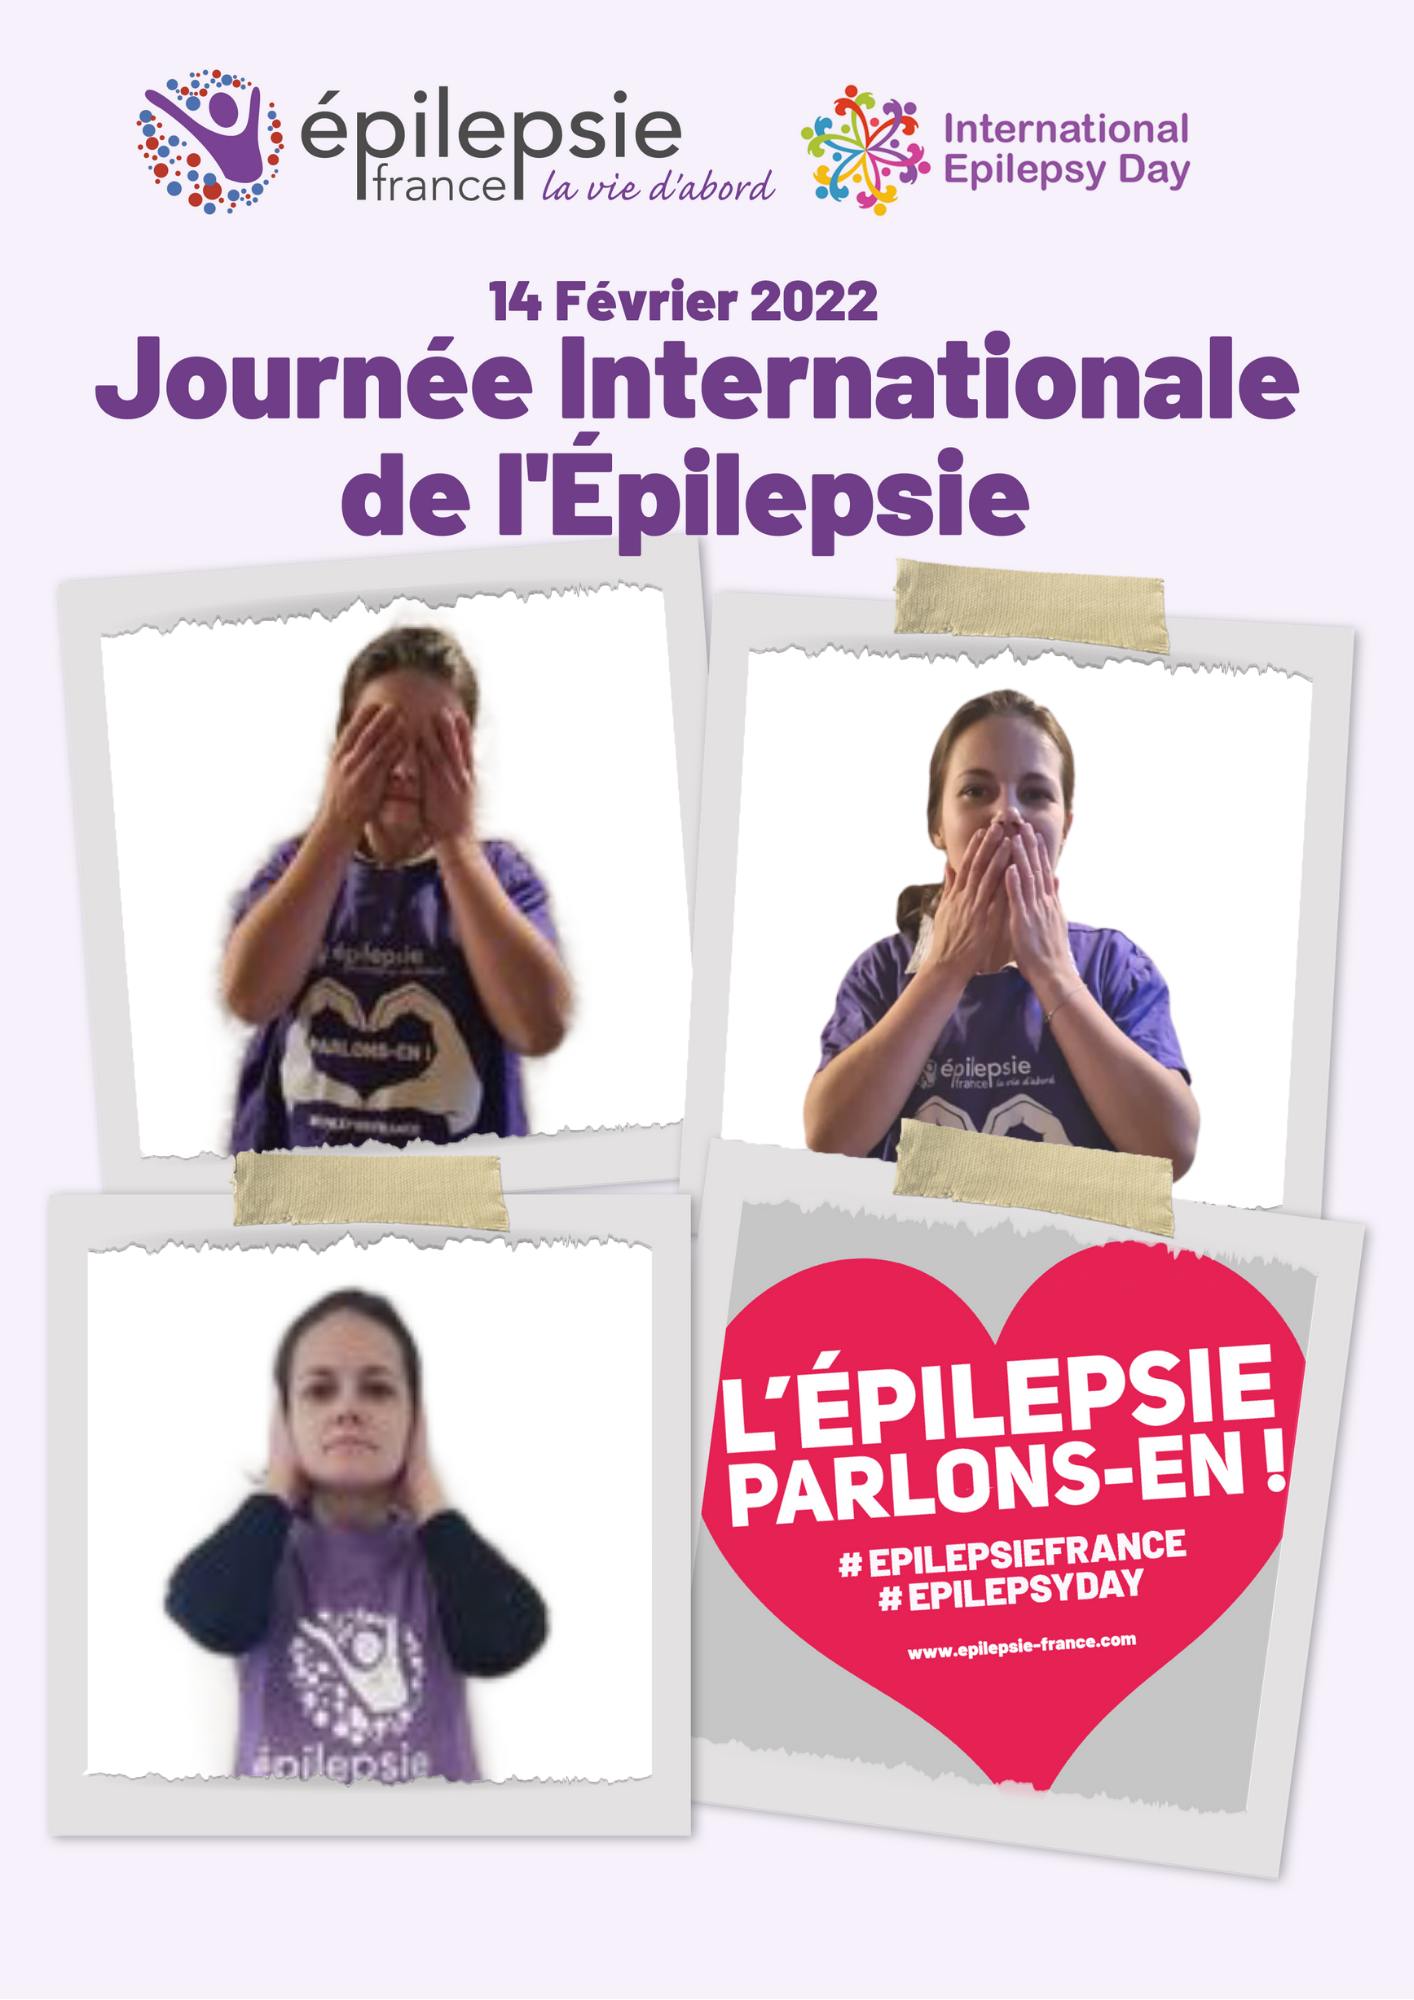 La journée internationale de l'épilepsie se déroule ce lundi 14 février © Épilepsie-France.